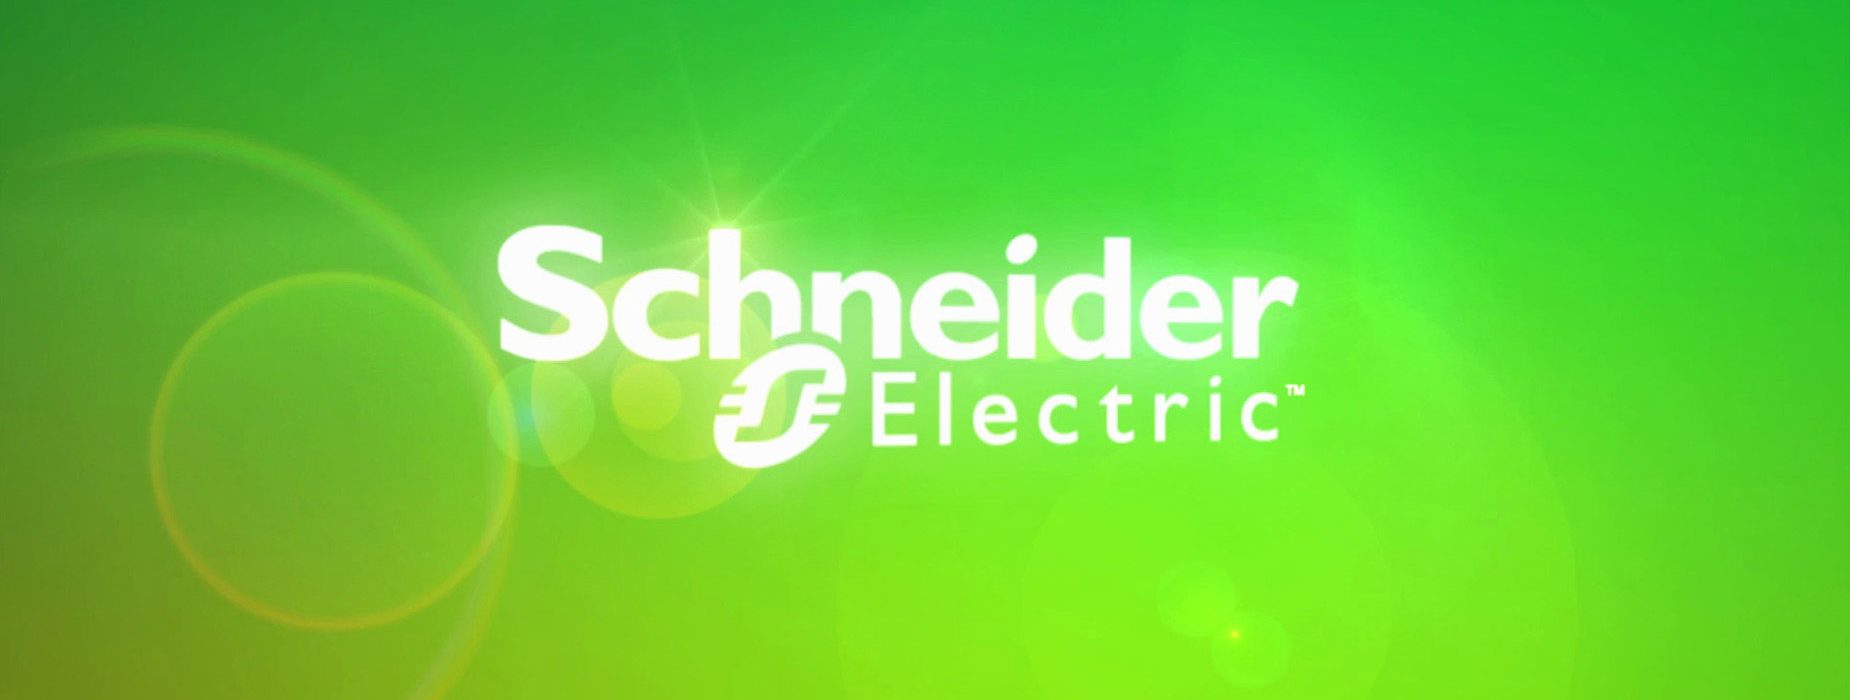 تاریخچه اشنایدر الکتریک (Schneider Electric)